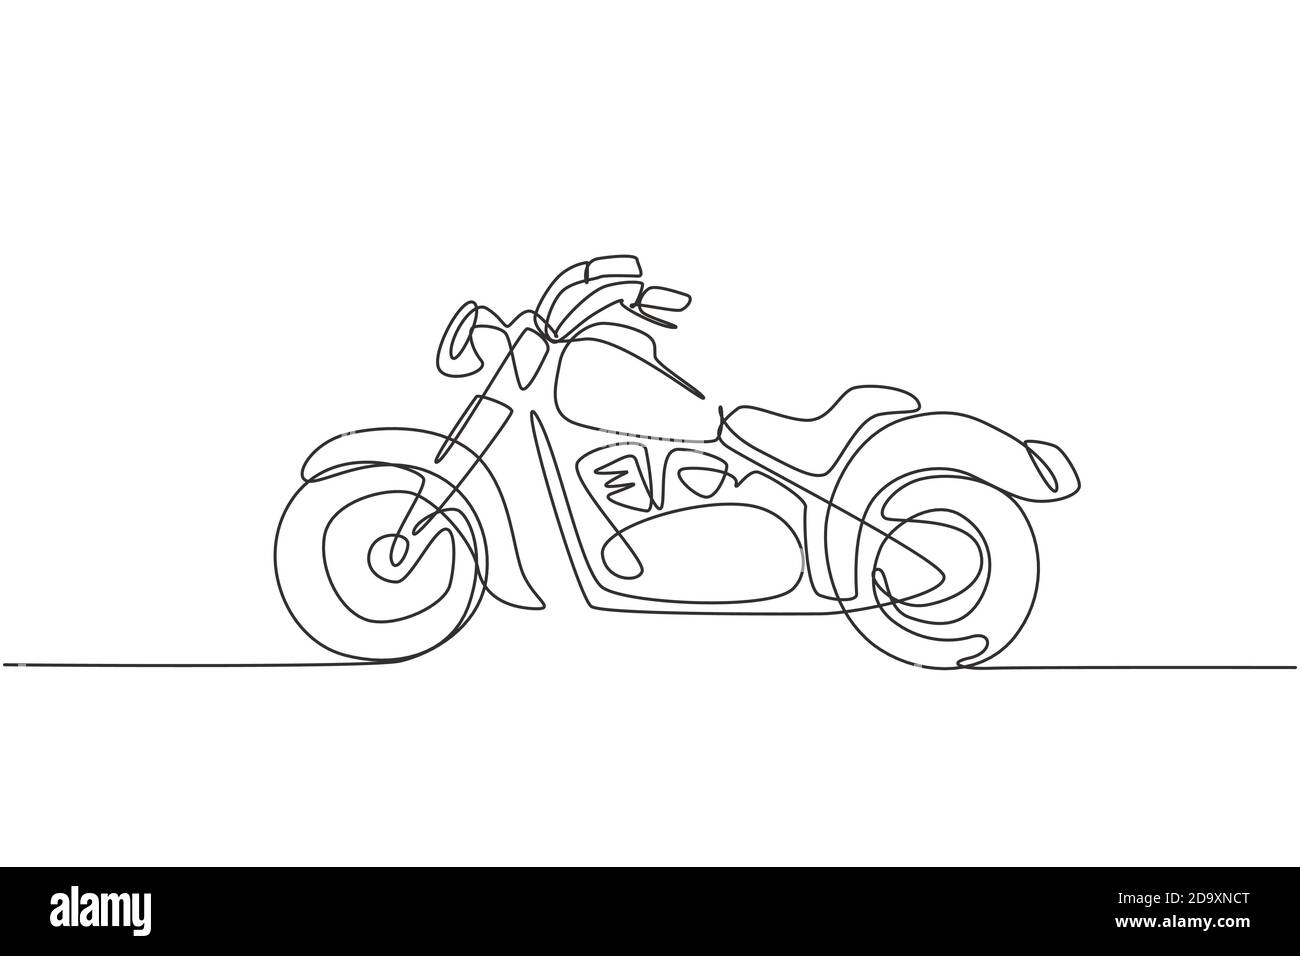 Eine kontinuierliche Linie Zeichnung von Retro alten Vintage Motorrad-Symbol.  Klassische Motorrad Transport Konzept einzeilige Grafik zeichnen Design  Vektor Stock-Vektorgrafik - Alamy